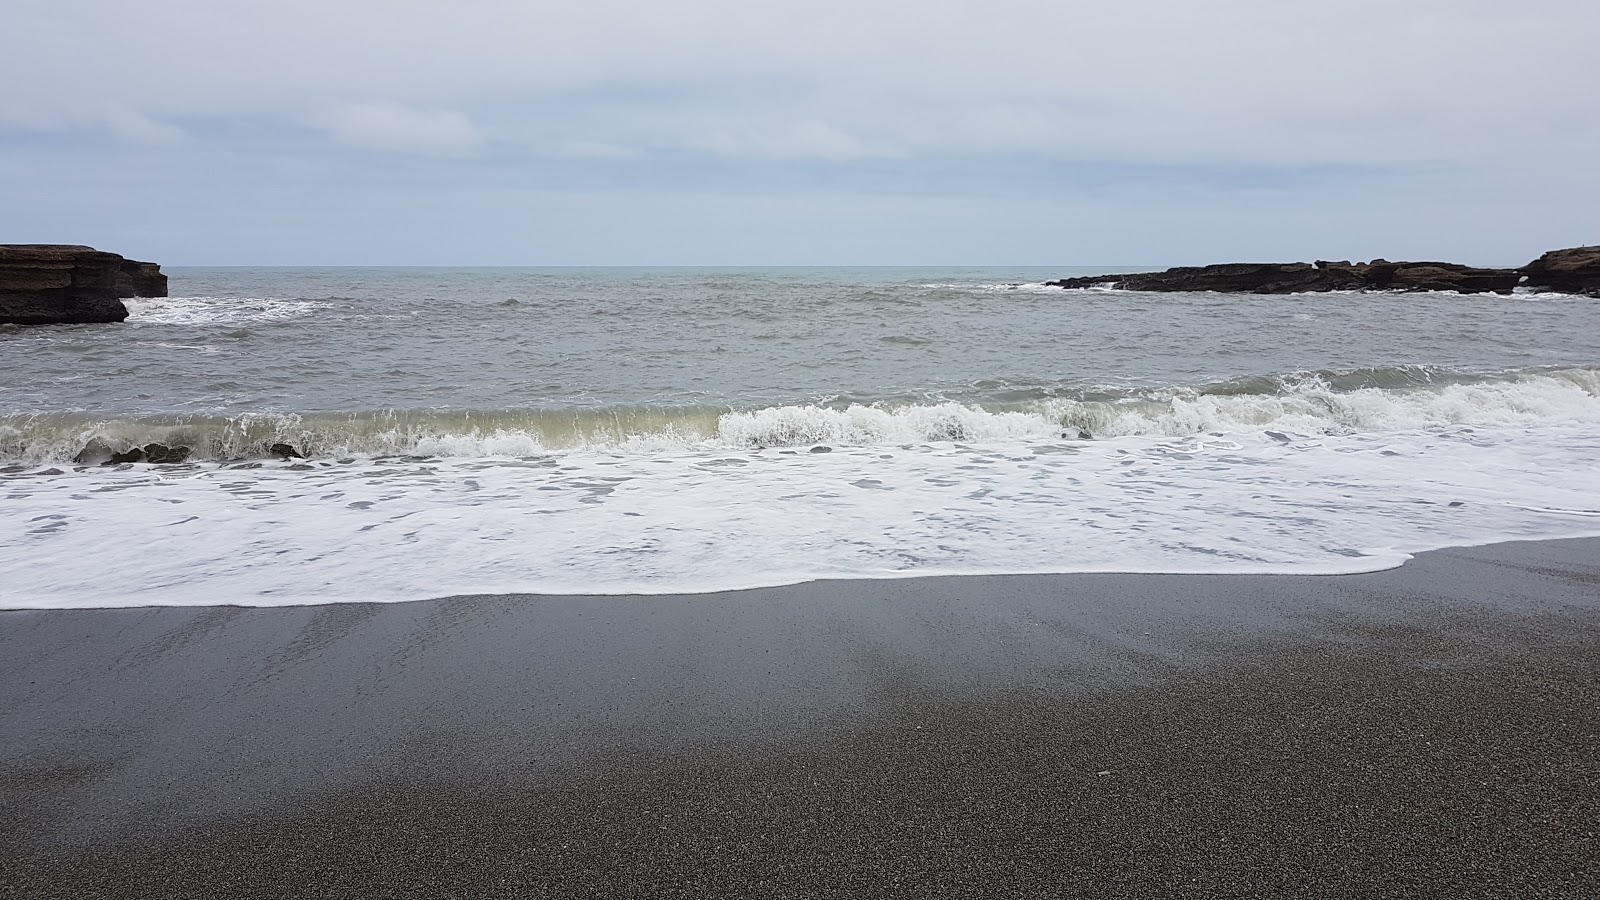 Fotografija Punakaiki Beach podprto z obalami